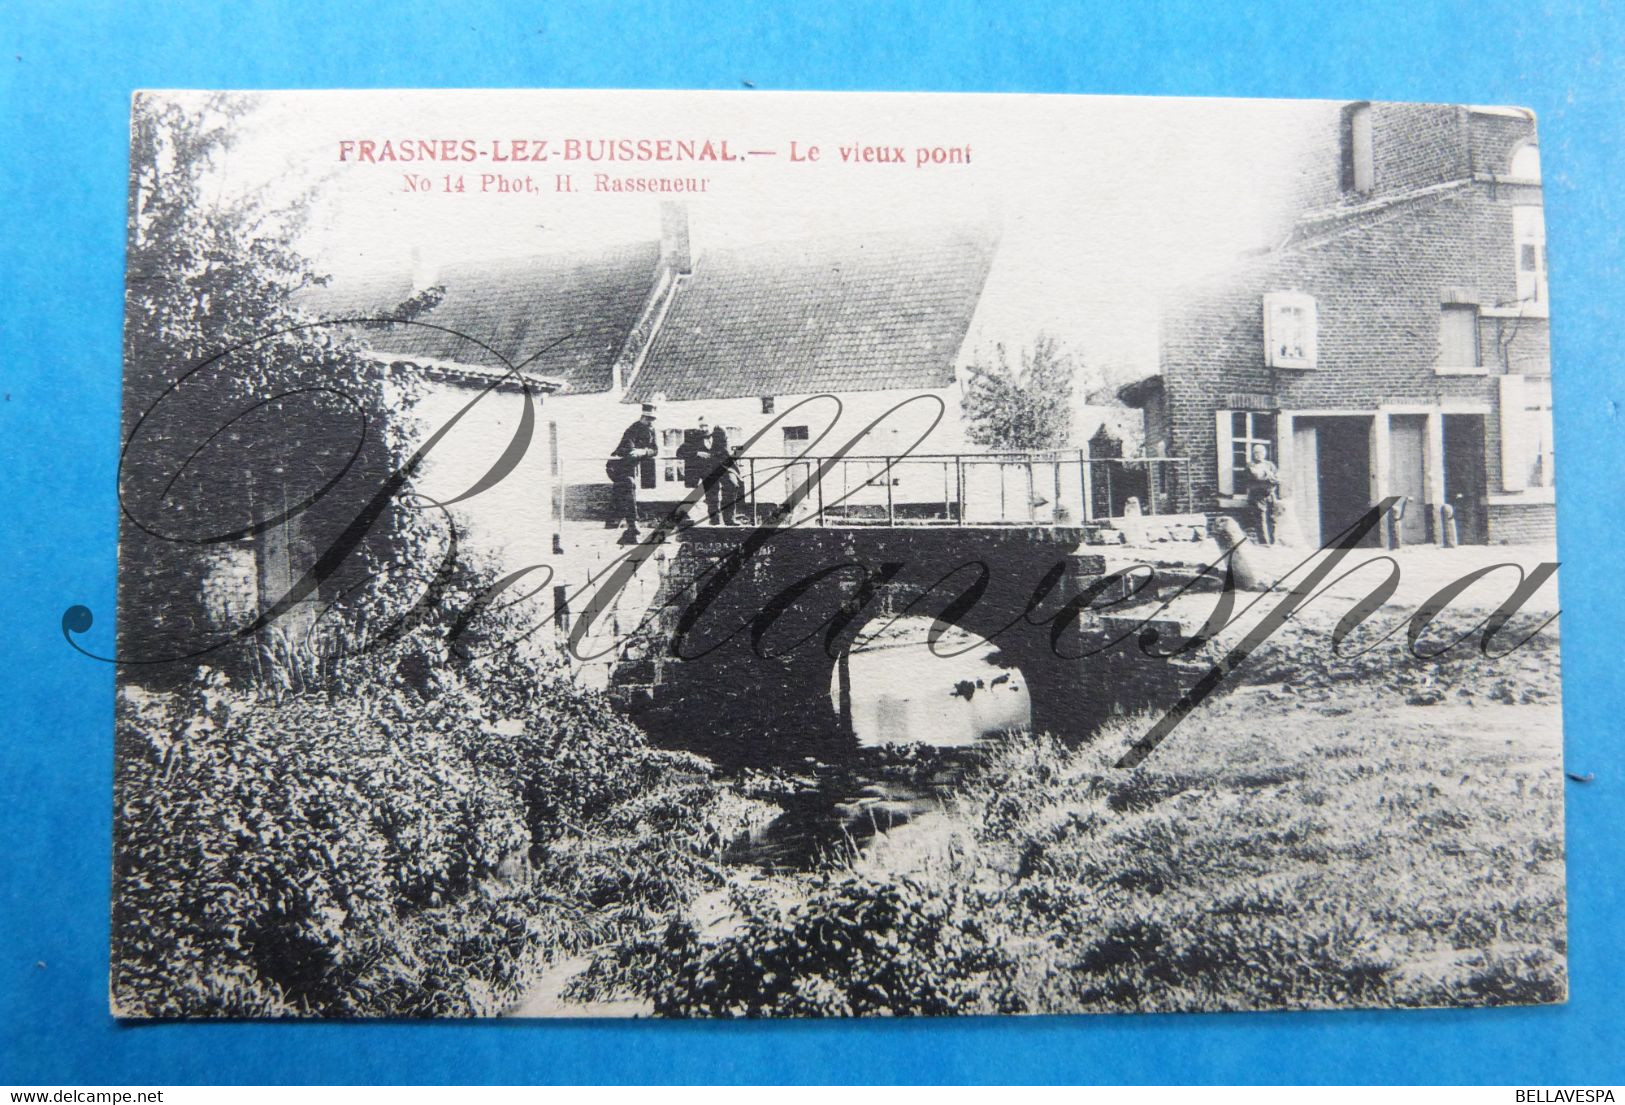 Fransnes Lez Buissenal Vieux Pont N°14 Photo H.Rasseneur. - Frasnes-lez-Anvaing